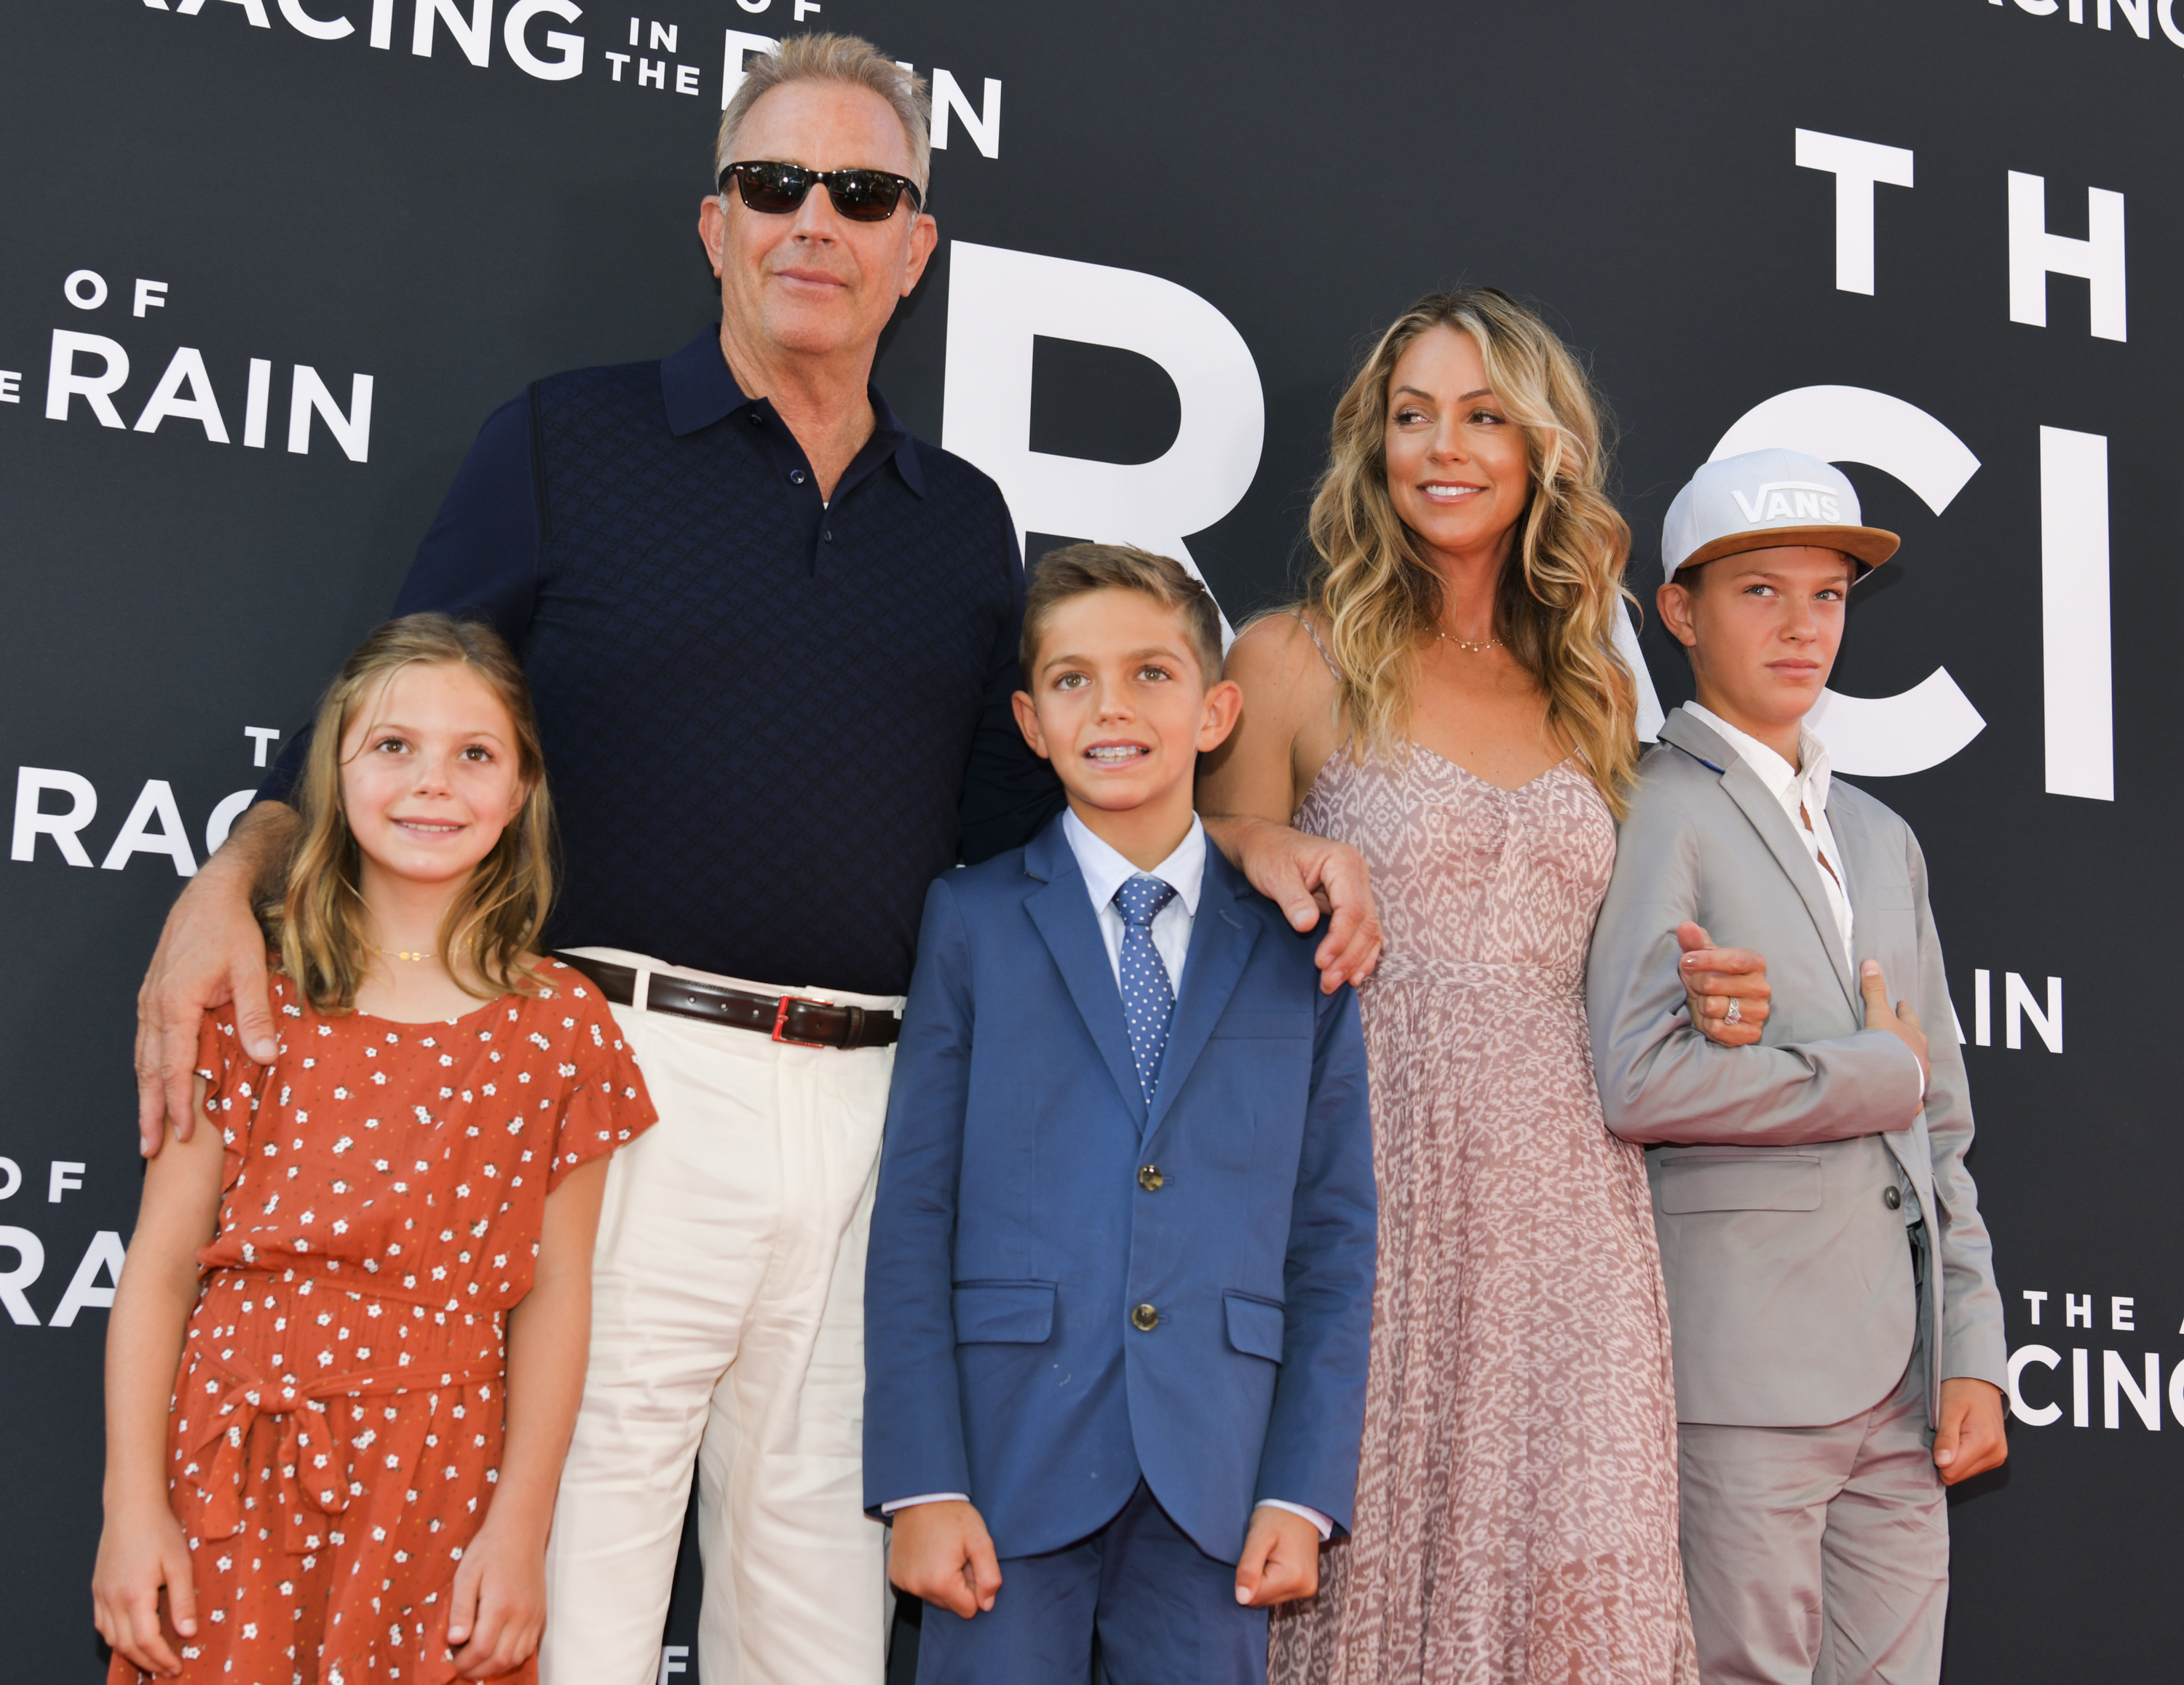 Costner and Baumgartner share three kids together